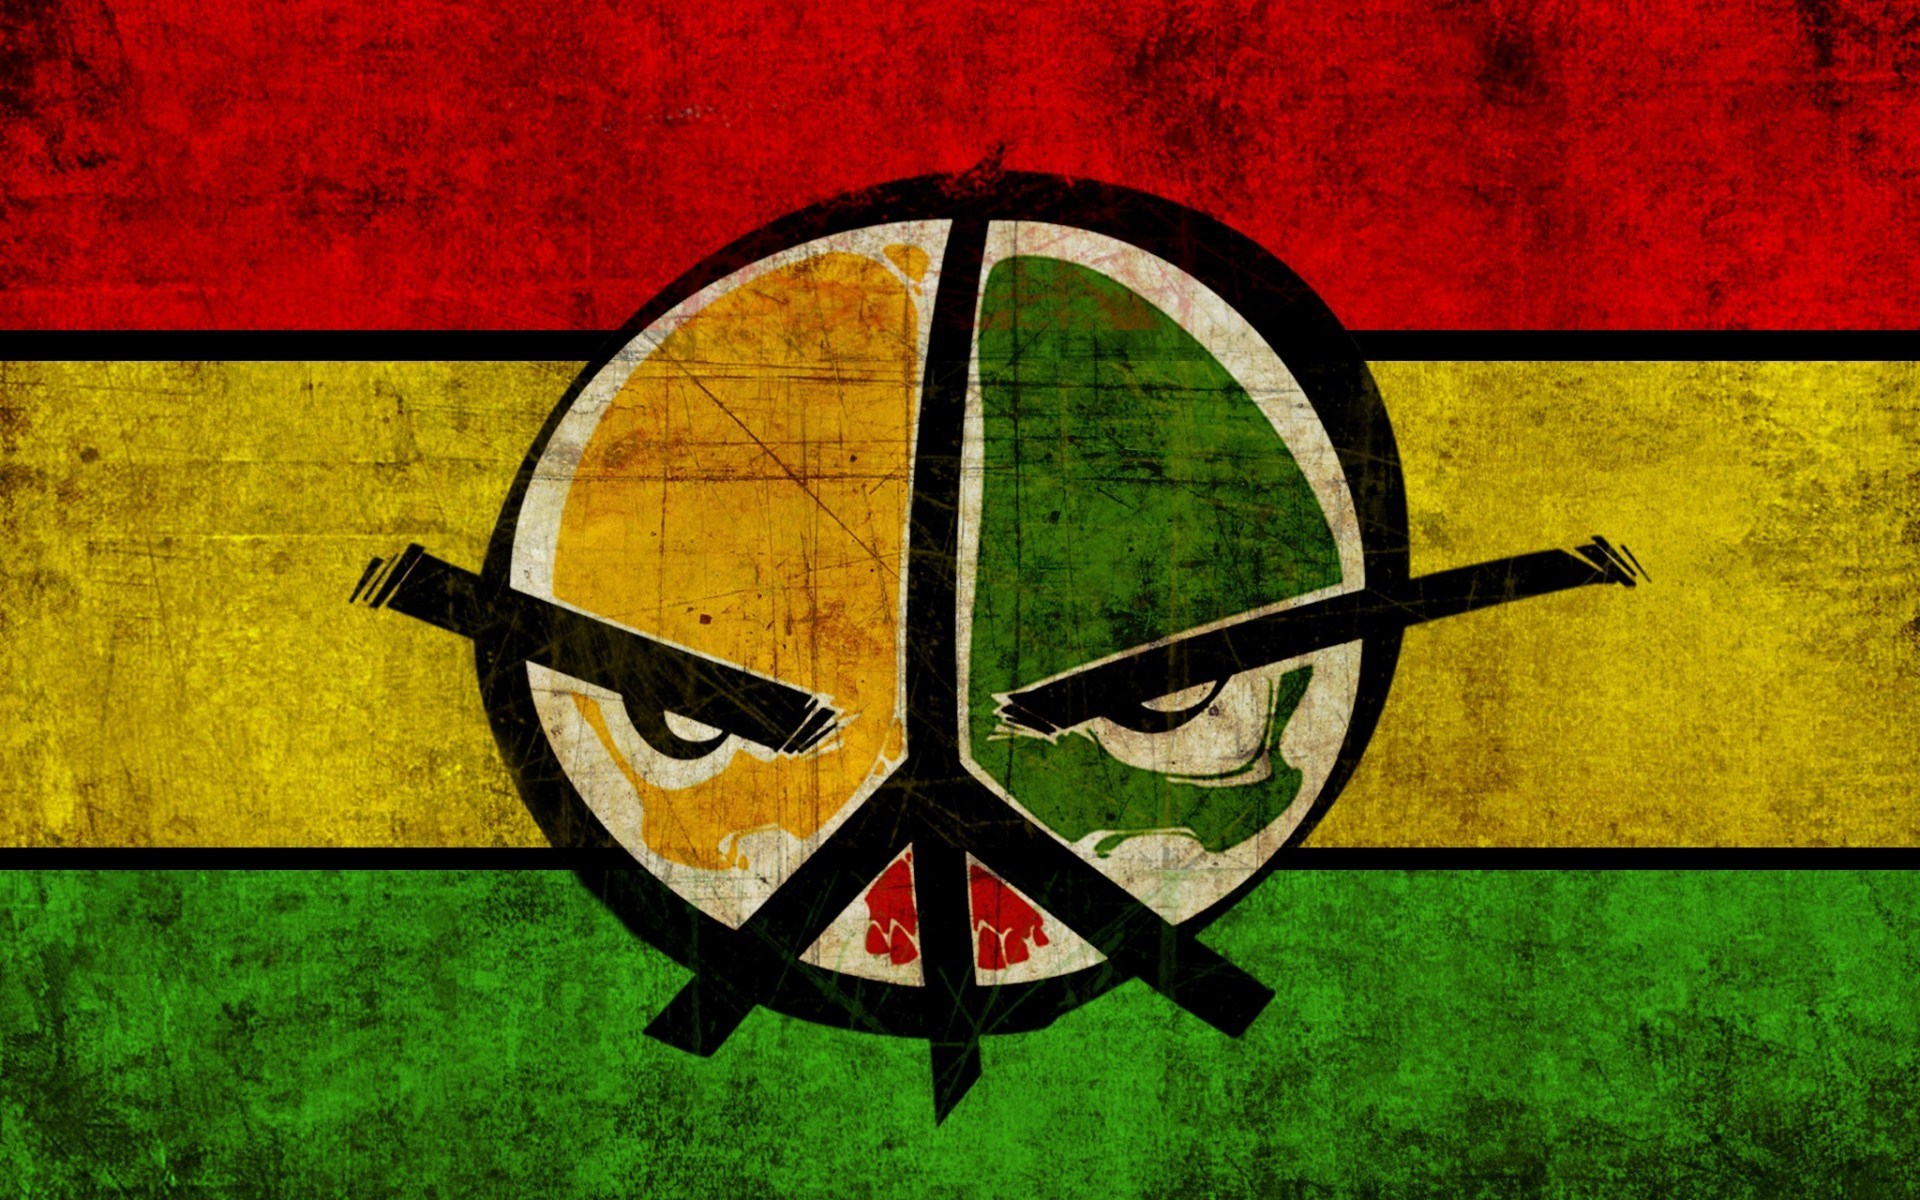 peace wallpaper hd,verde,giallo,illustrazione,disegno grafico,bandiera